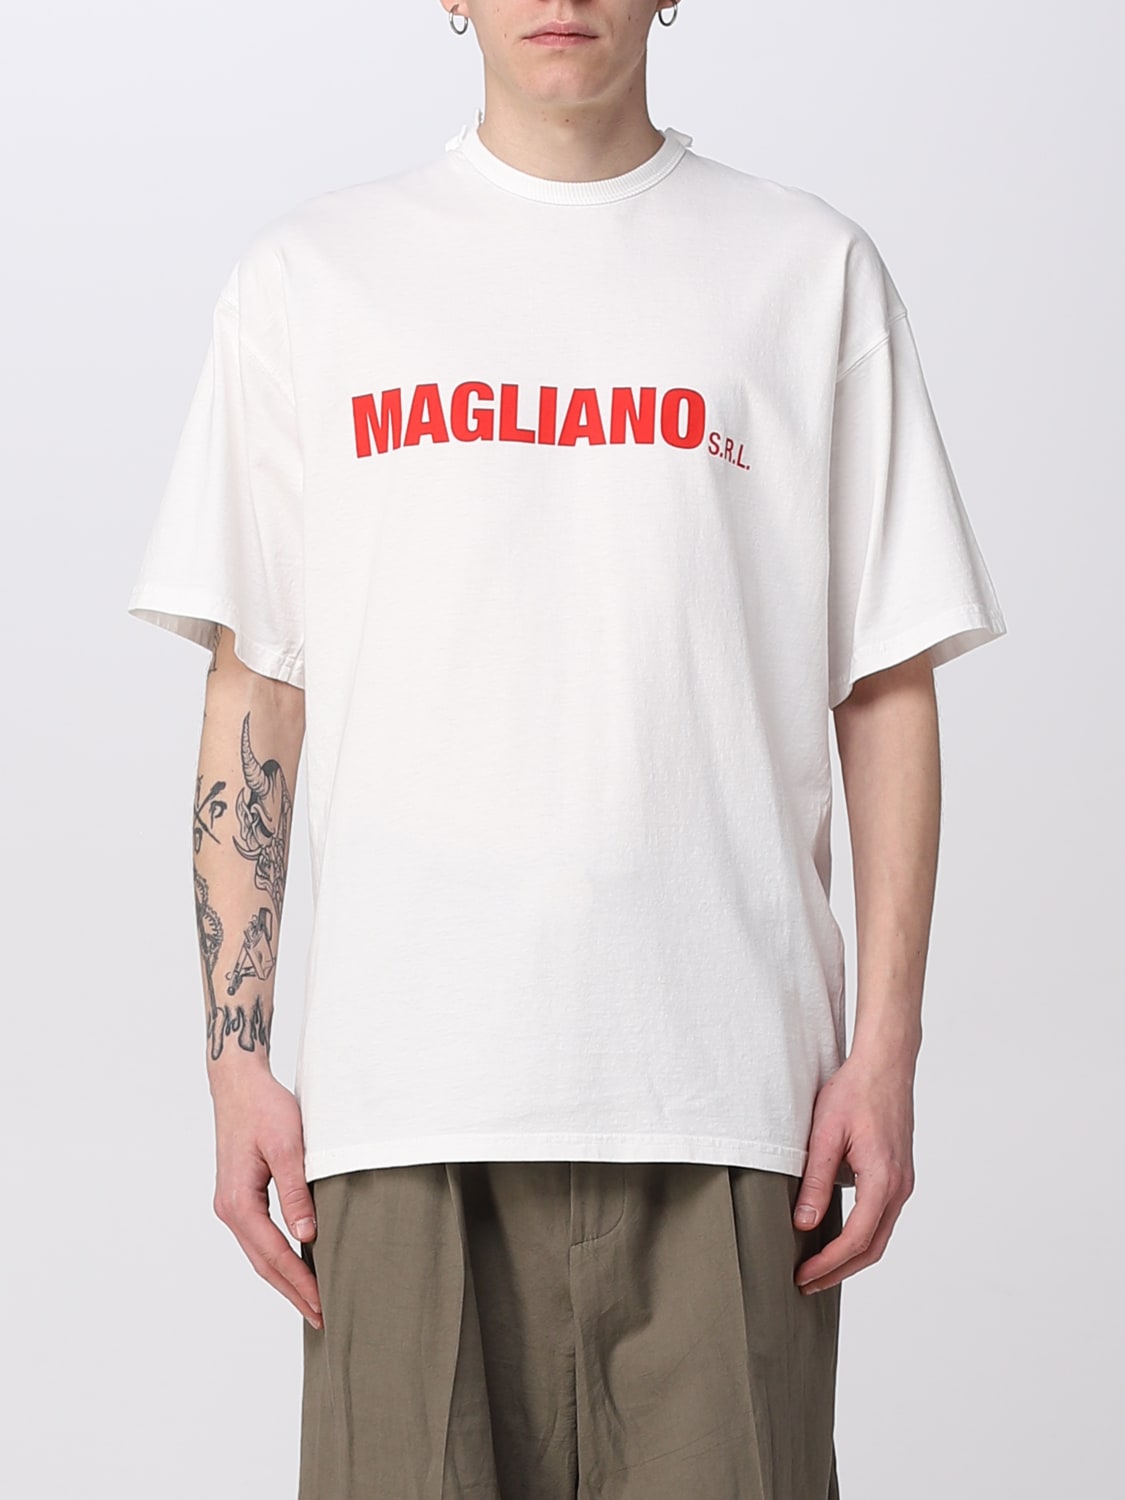 Tシャツ/カットソー(半袖/袖なし)magliano Tシャツ